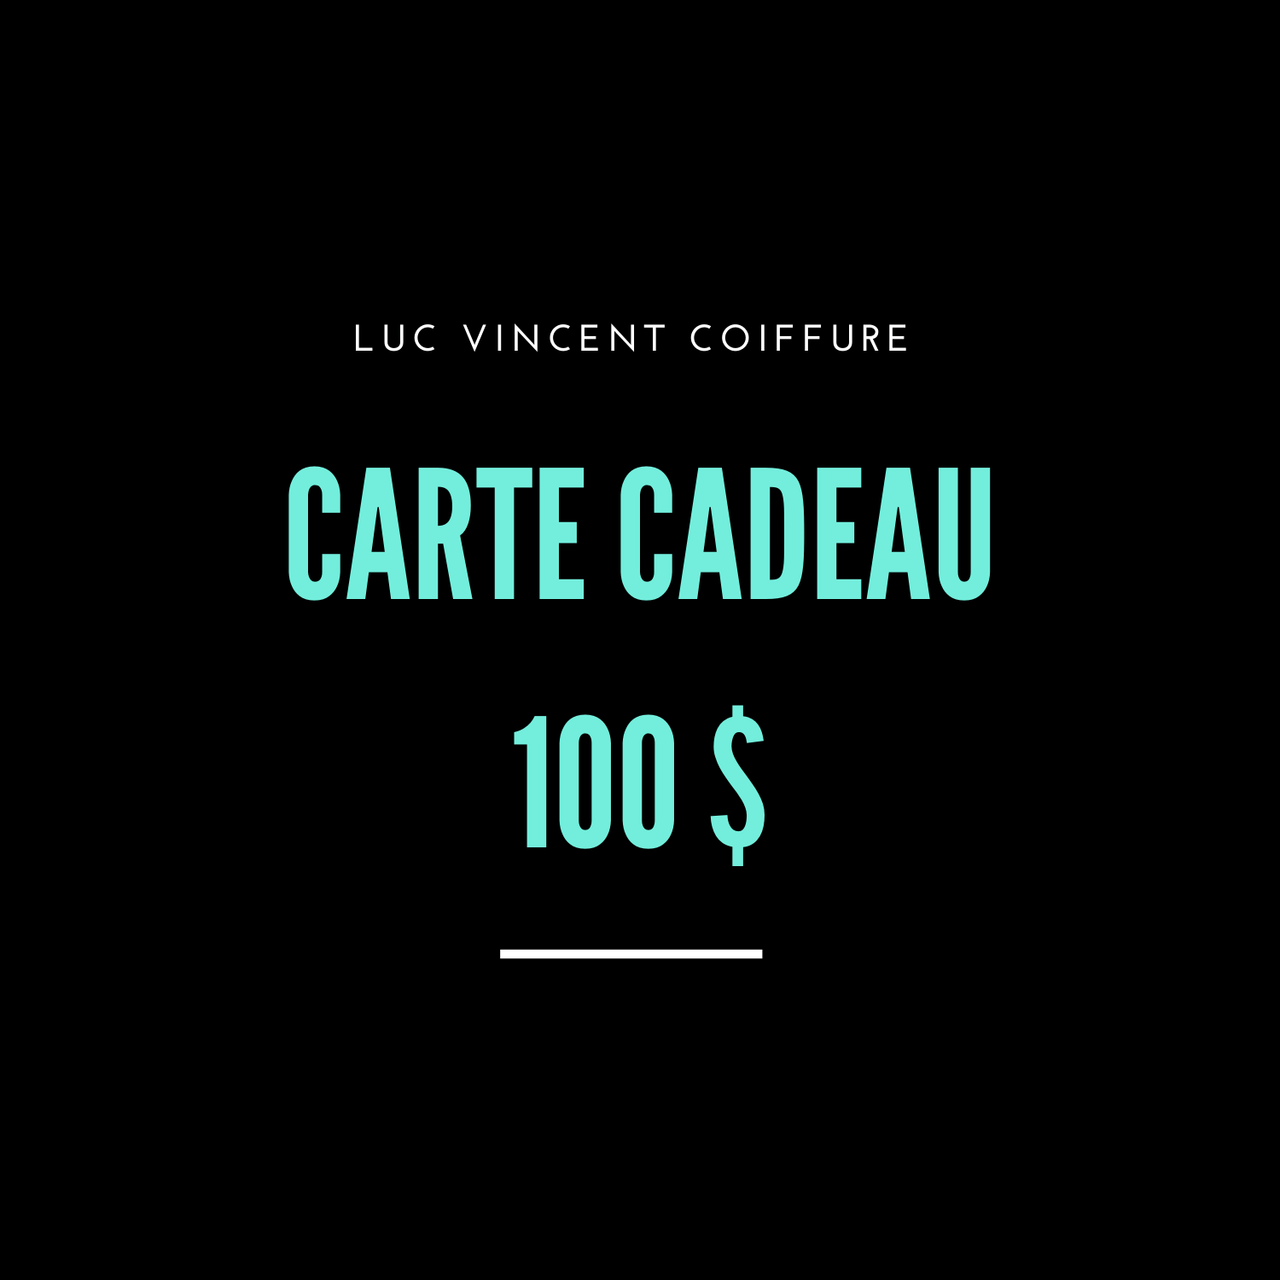 CARTE CADEAU LUC VINCENT - Luc Vincent